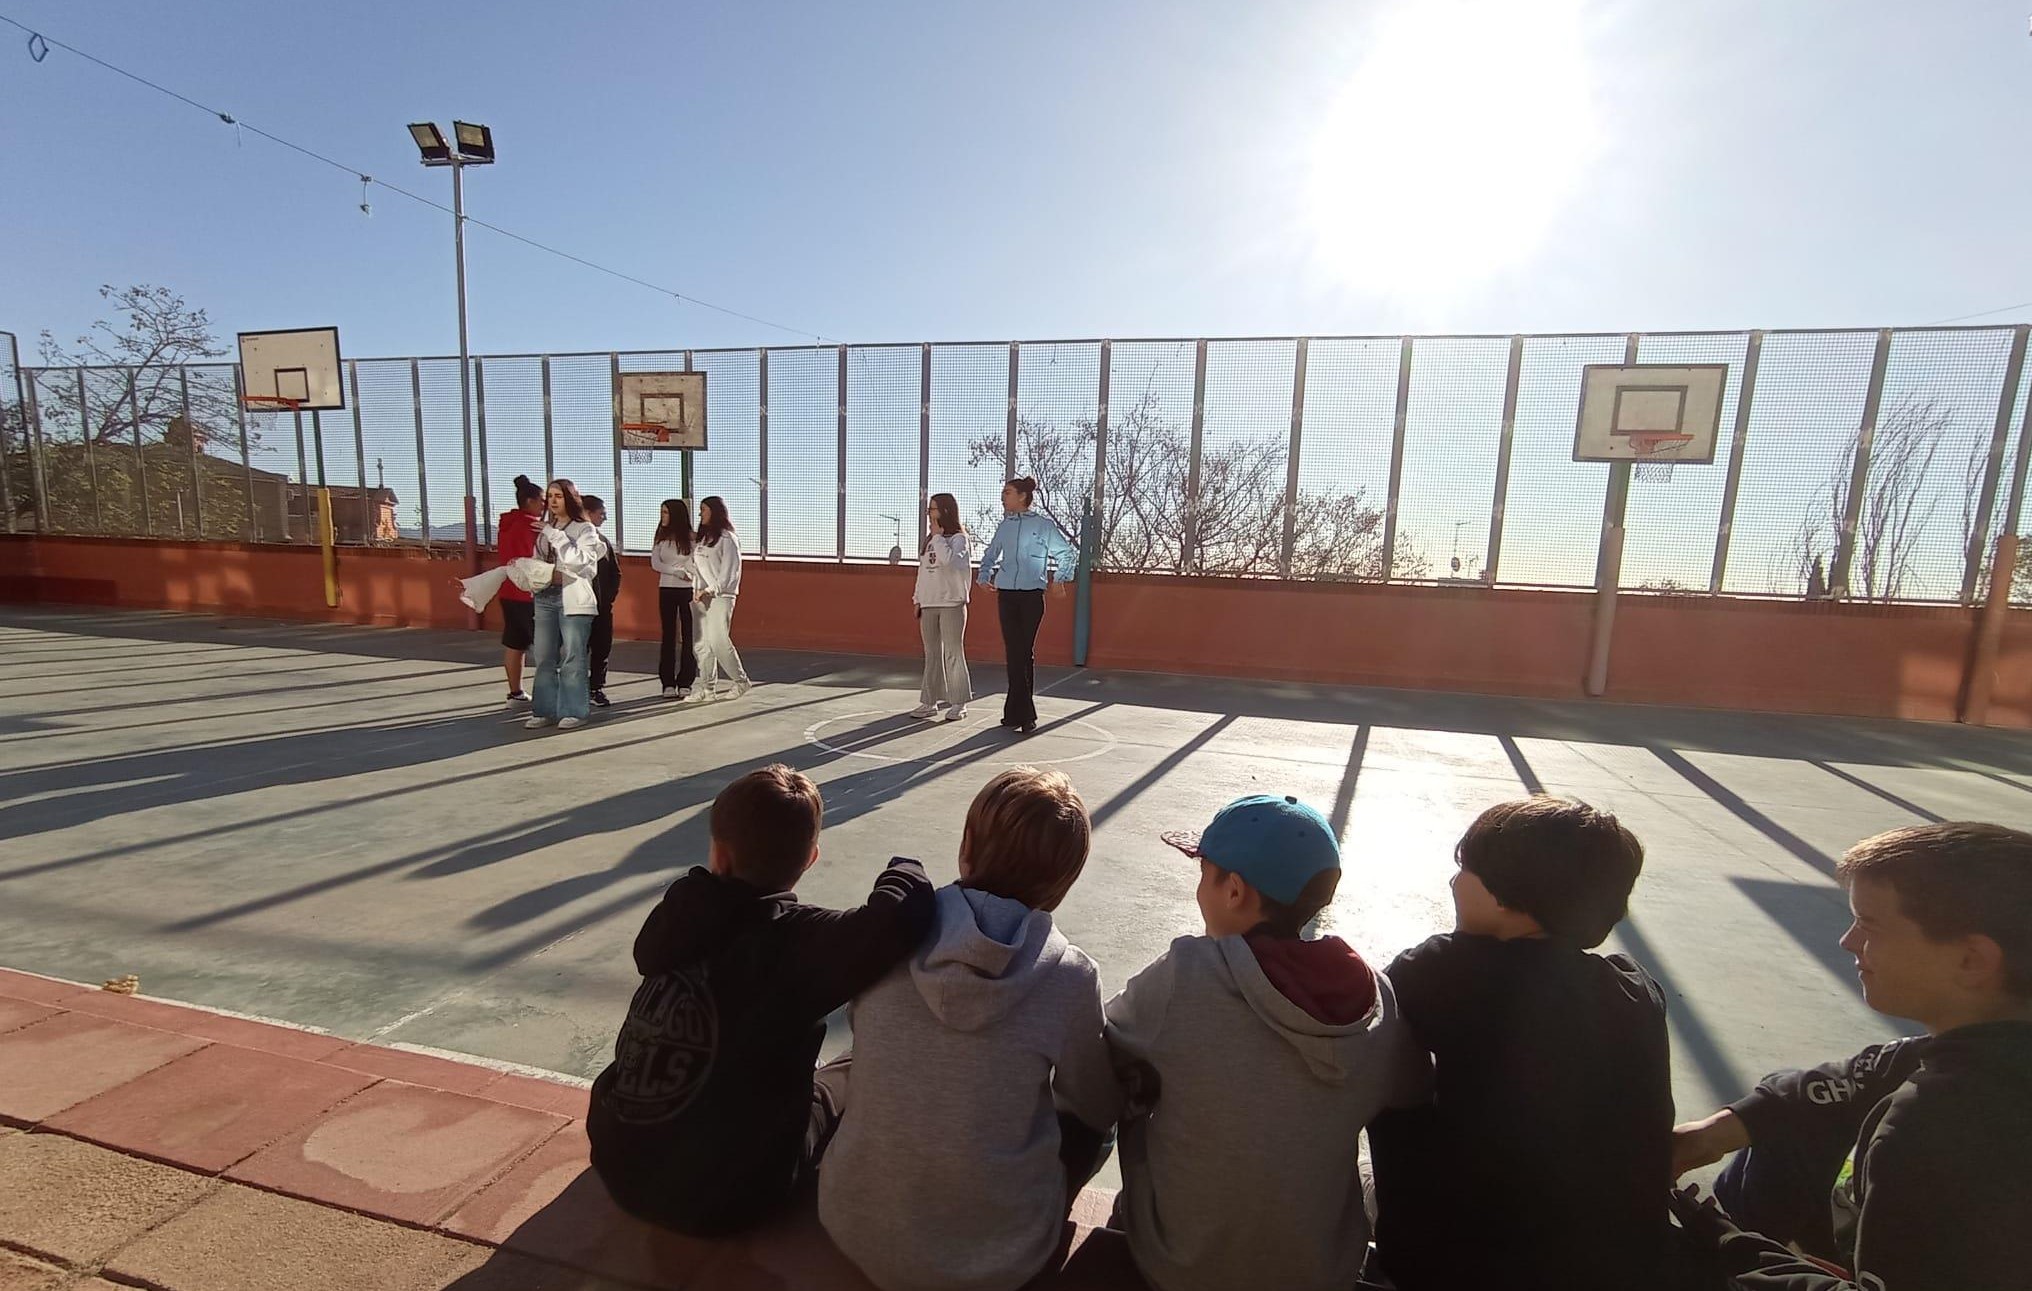 Un grupo de niños observa sentado a un grupo de adolescentes en espacio deportivo al aire libre